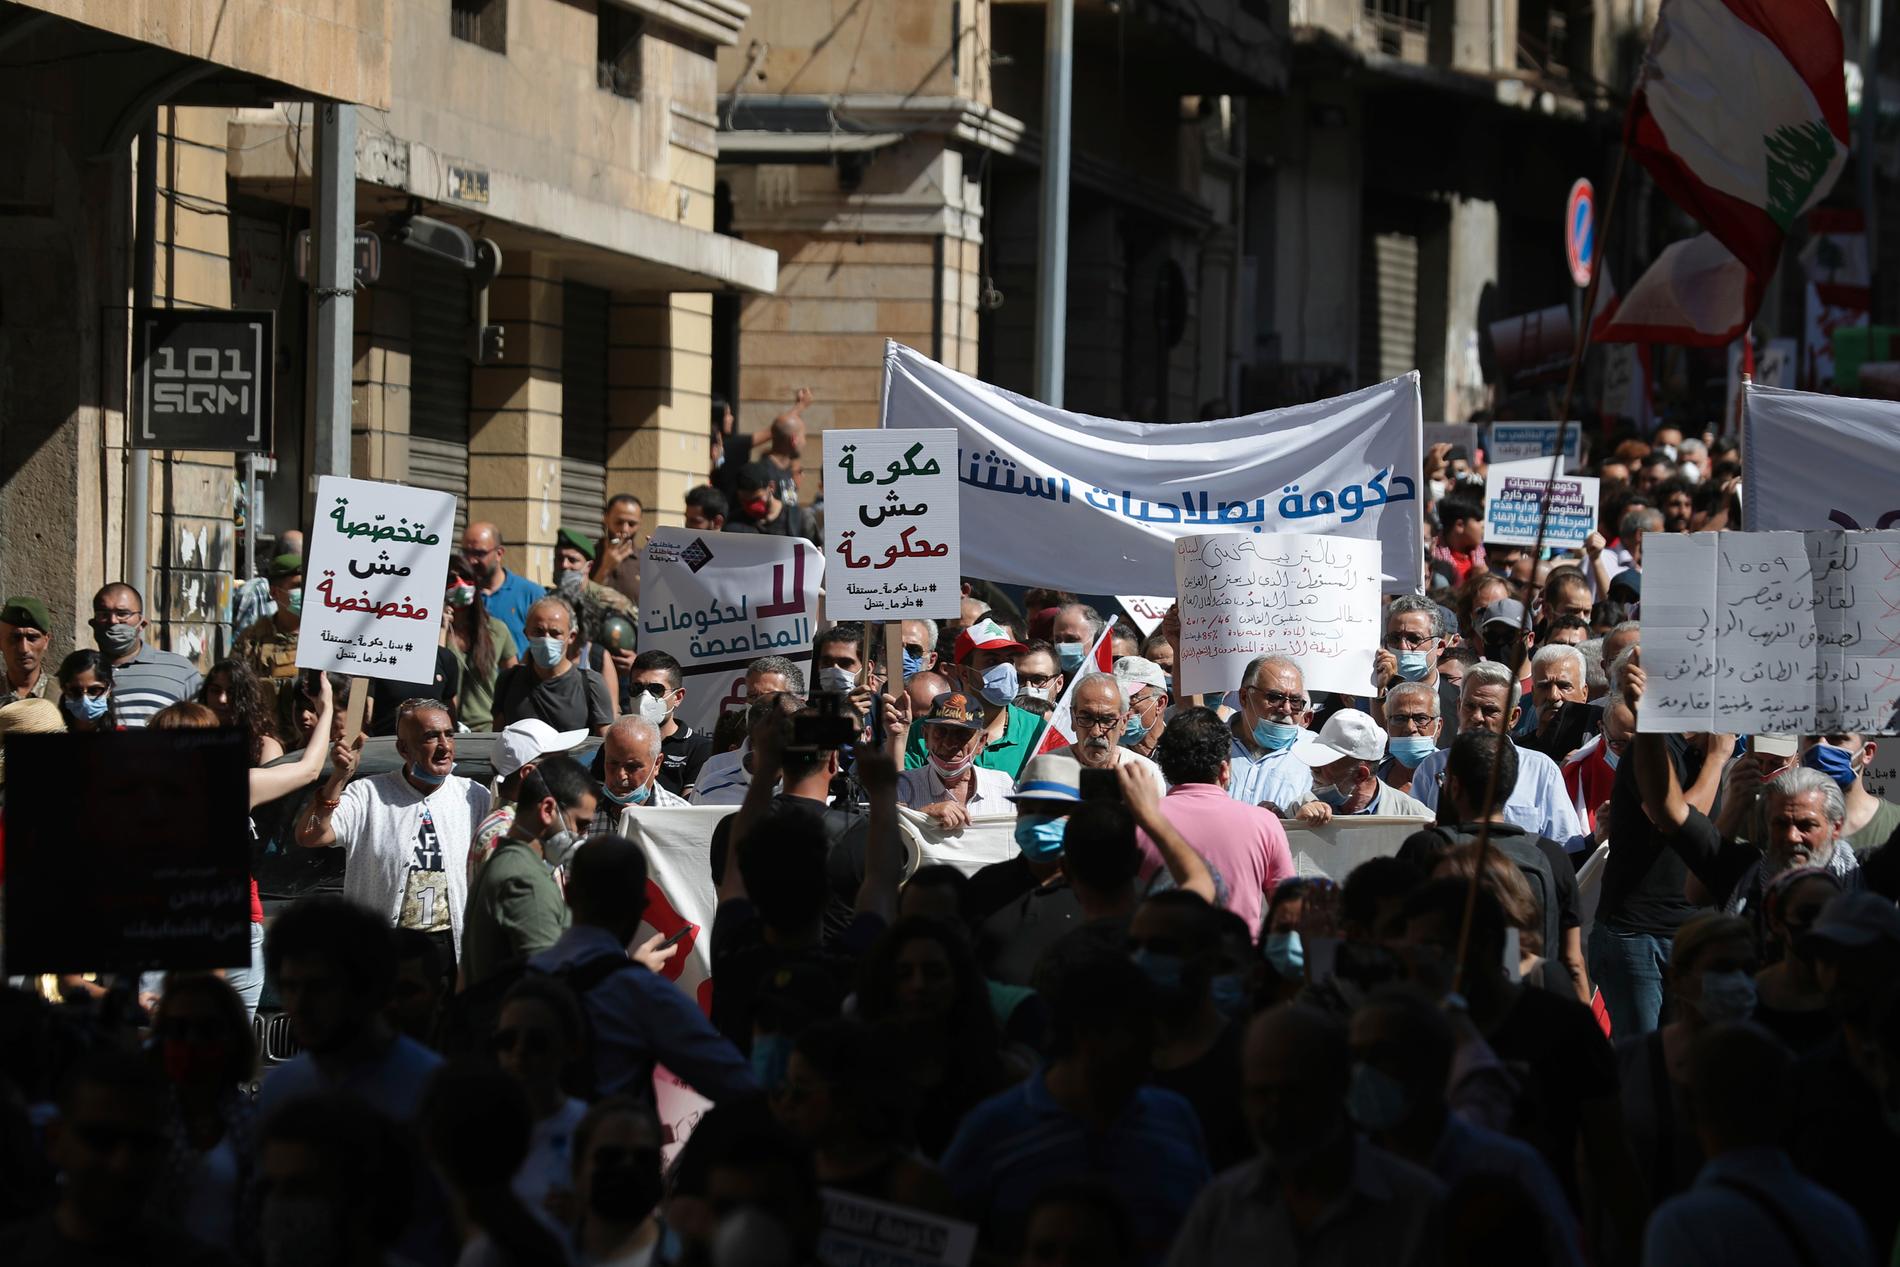 De flesta protesterna i Libanon genomfördes utan våldsamheter, som den här i huvudstaden Beirut under lördagen.